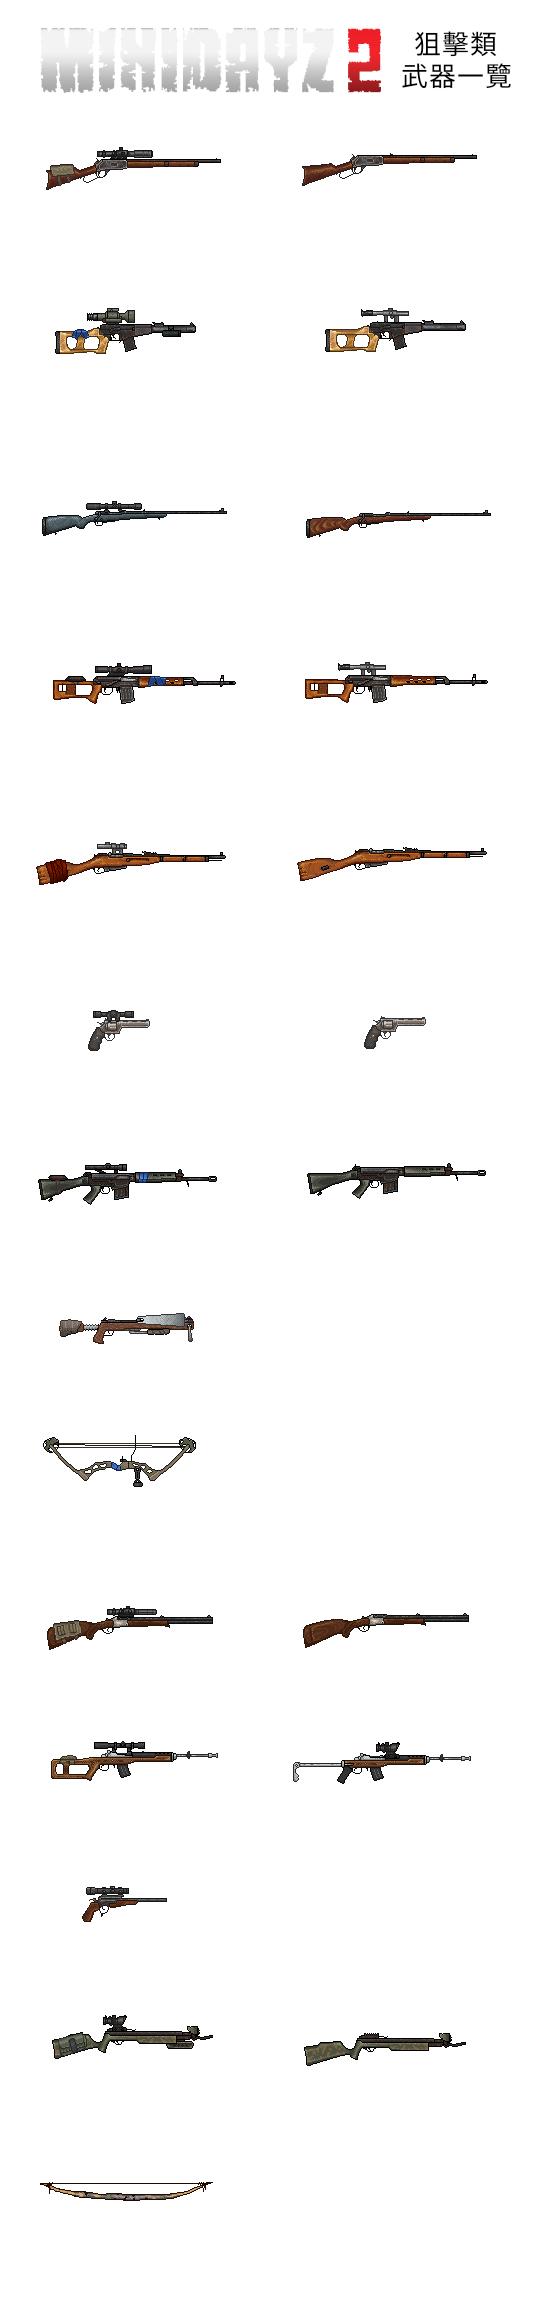 狙击类武器一览表